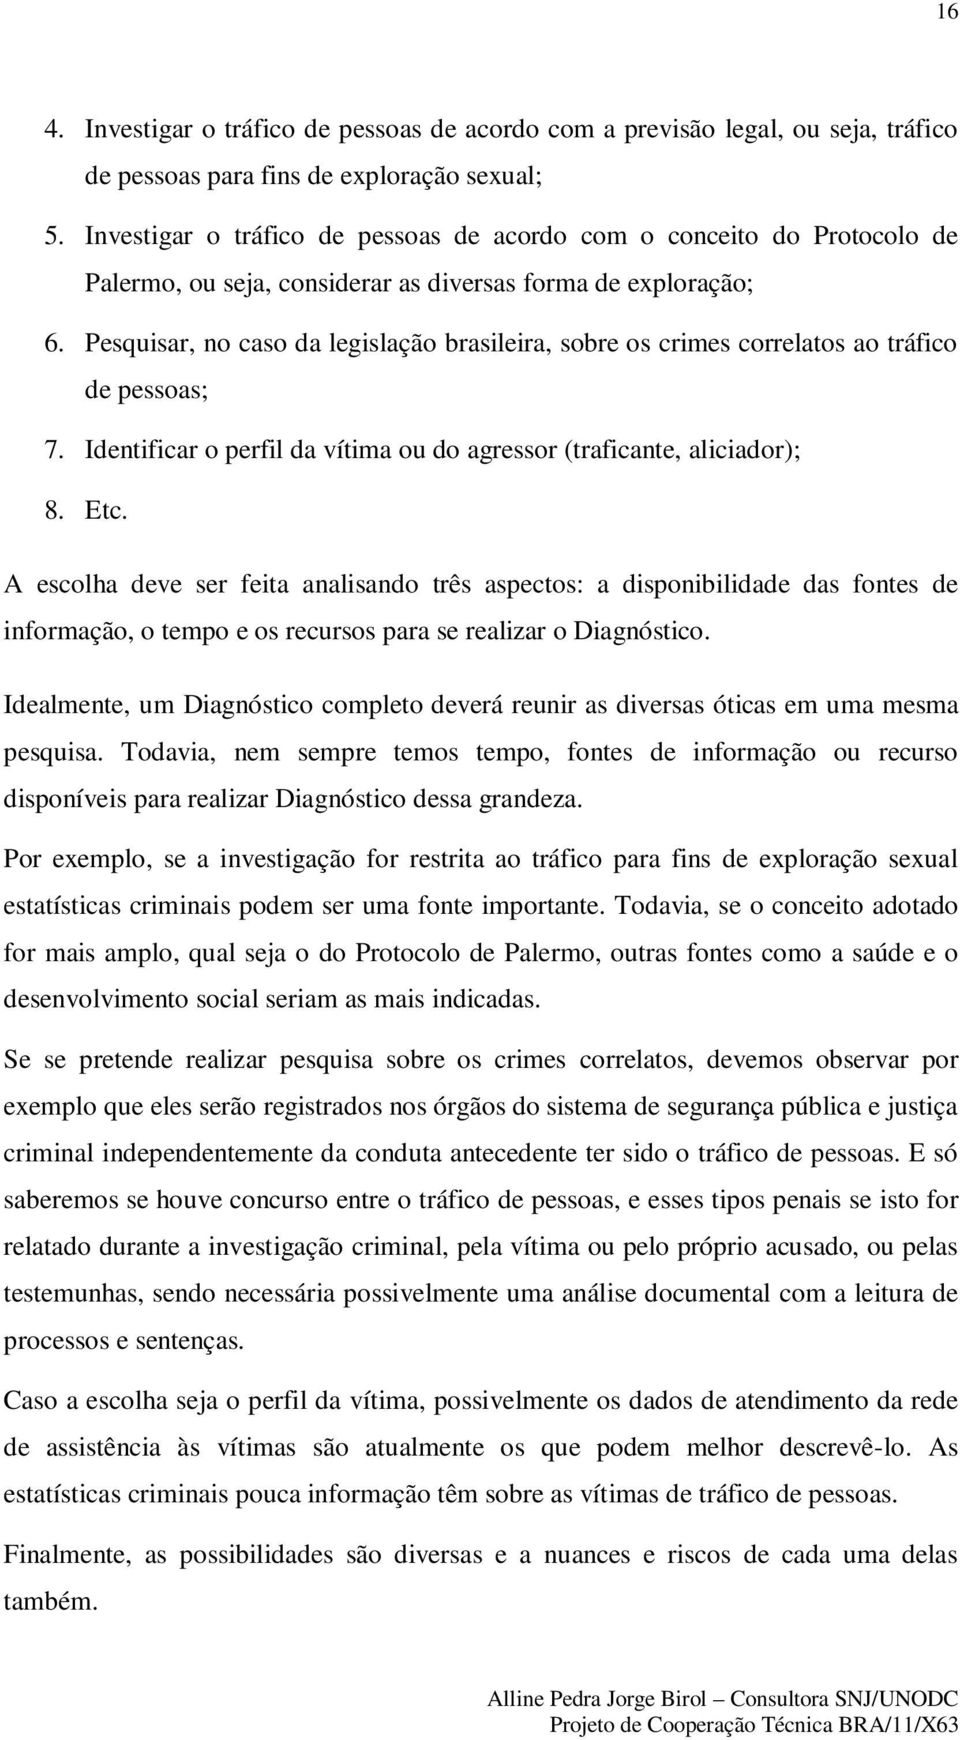 Pesquisar, no caso da legislação brasileira, sobre os crimes correlatos ao tráfico de pessoas; 7. Identificar o perfil da vítima ou do agressor (traficante, aliciador); 8. Etc.